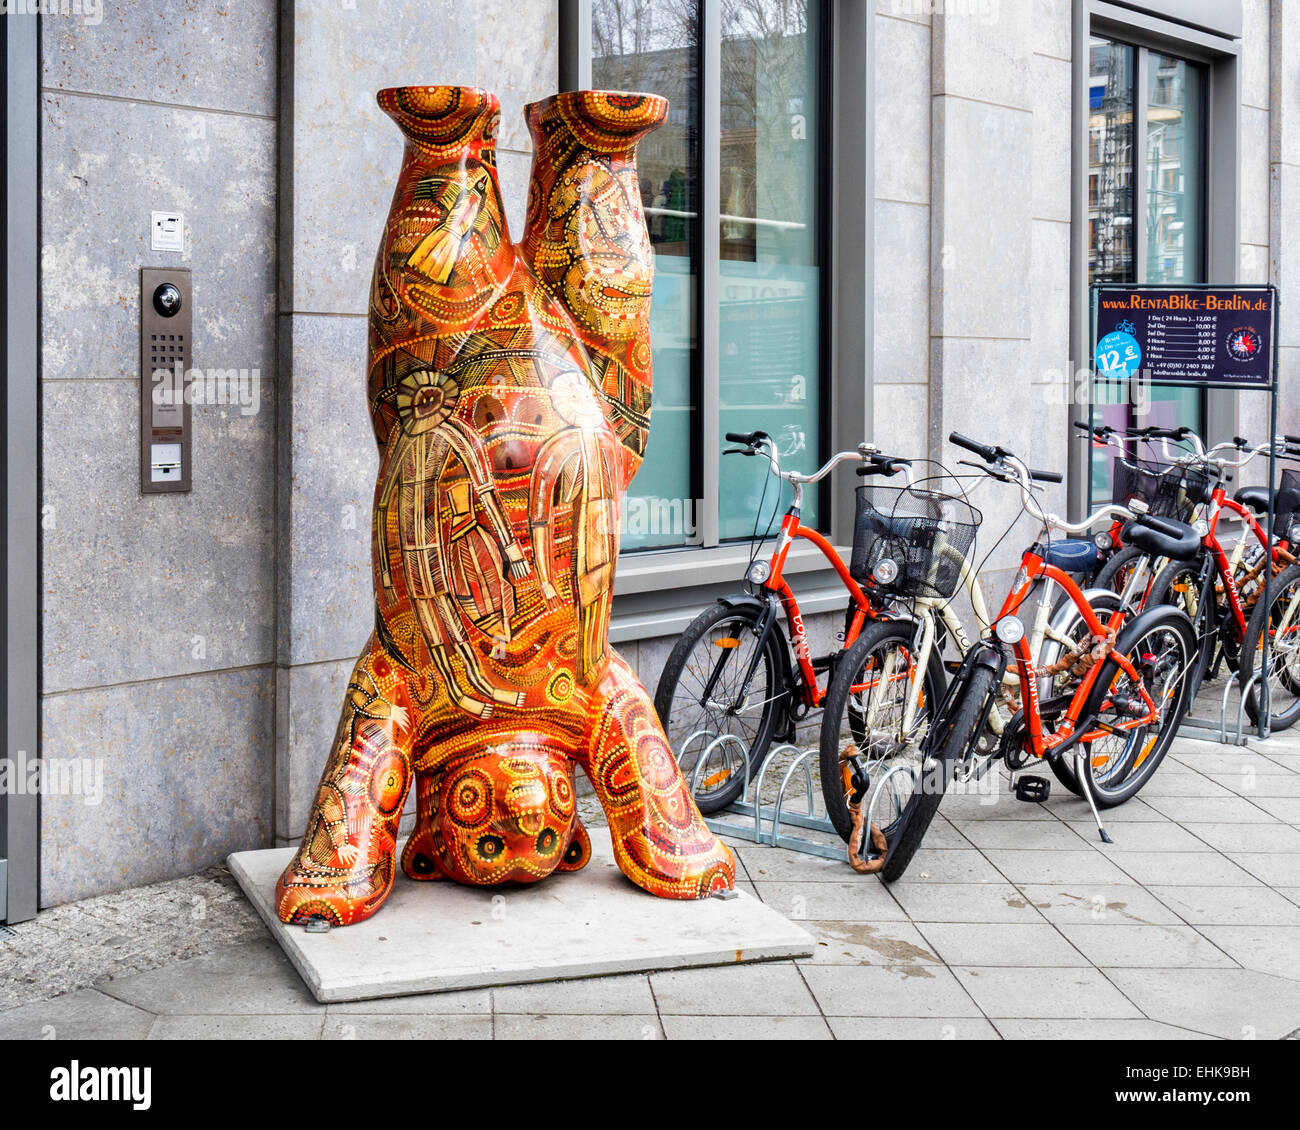 Buddy Bär - bunte lebensgroße Fiberglas Skulptur zunächst in Berlin gesehen außerhalb Geschäfte und Hotels, Deutschland entwickelt. Stockfoto